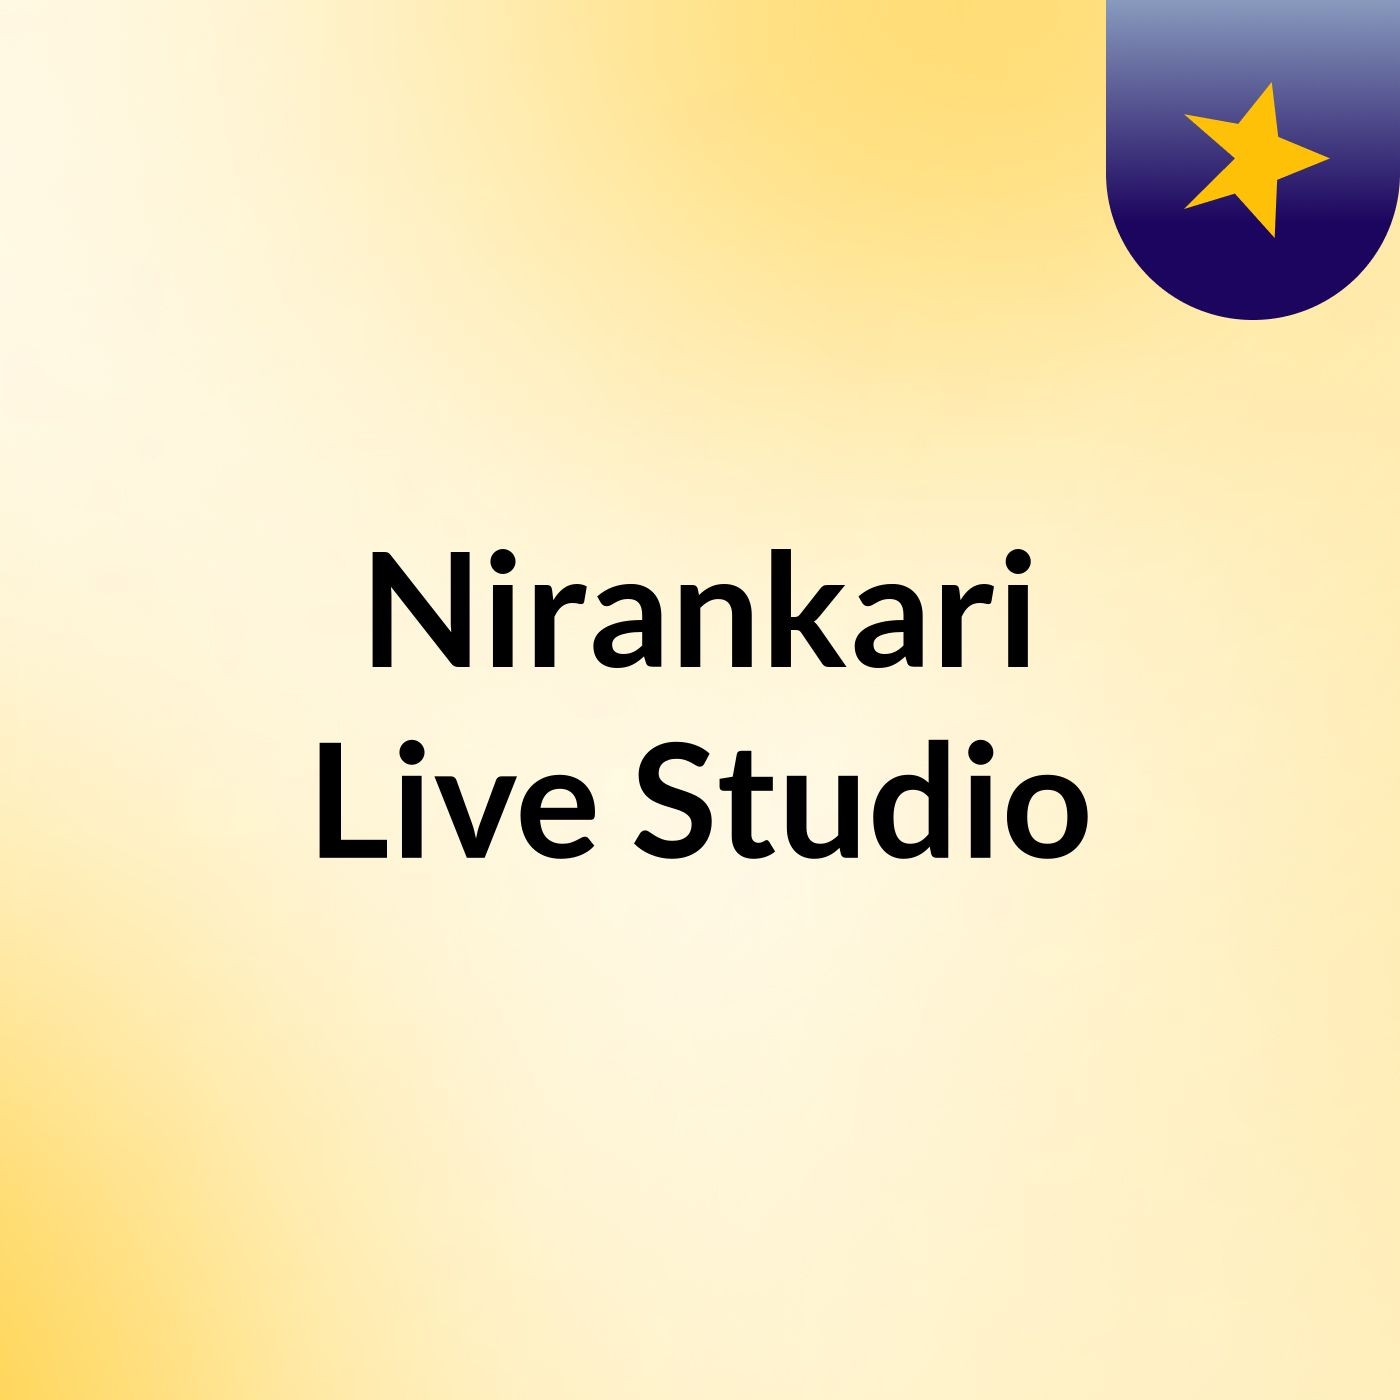 Episode 4 - Nirankari Live Studio